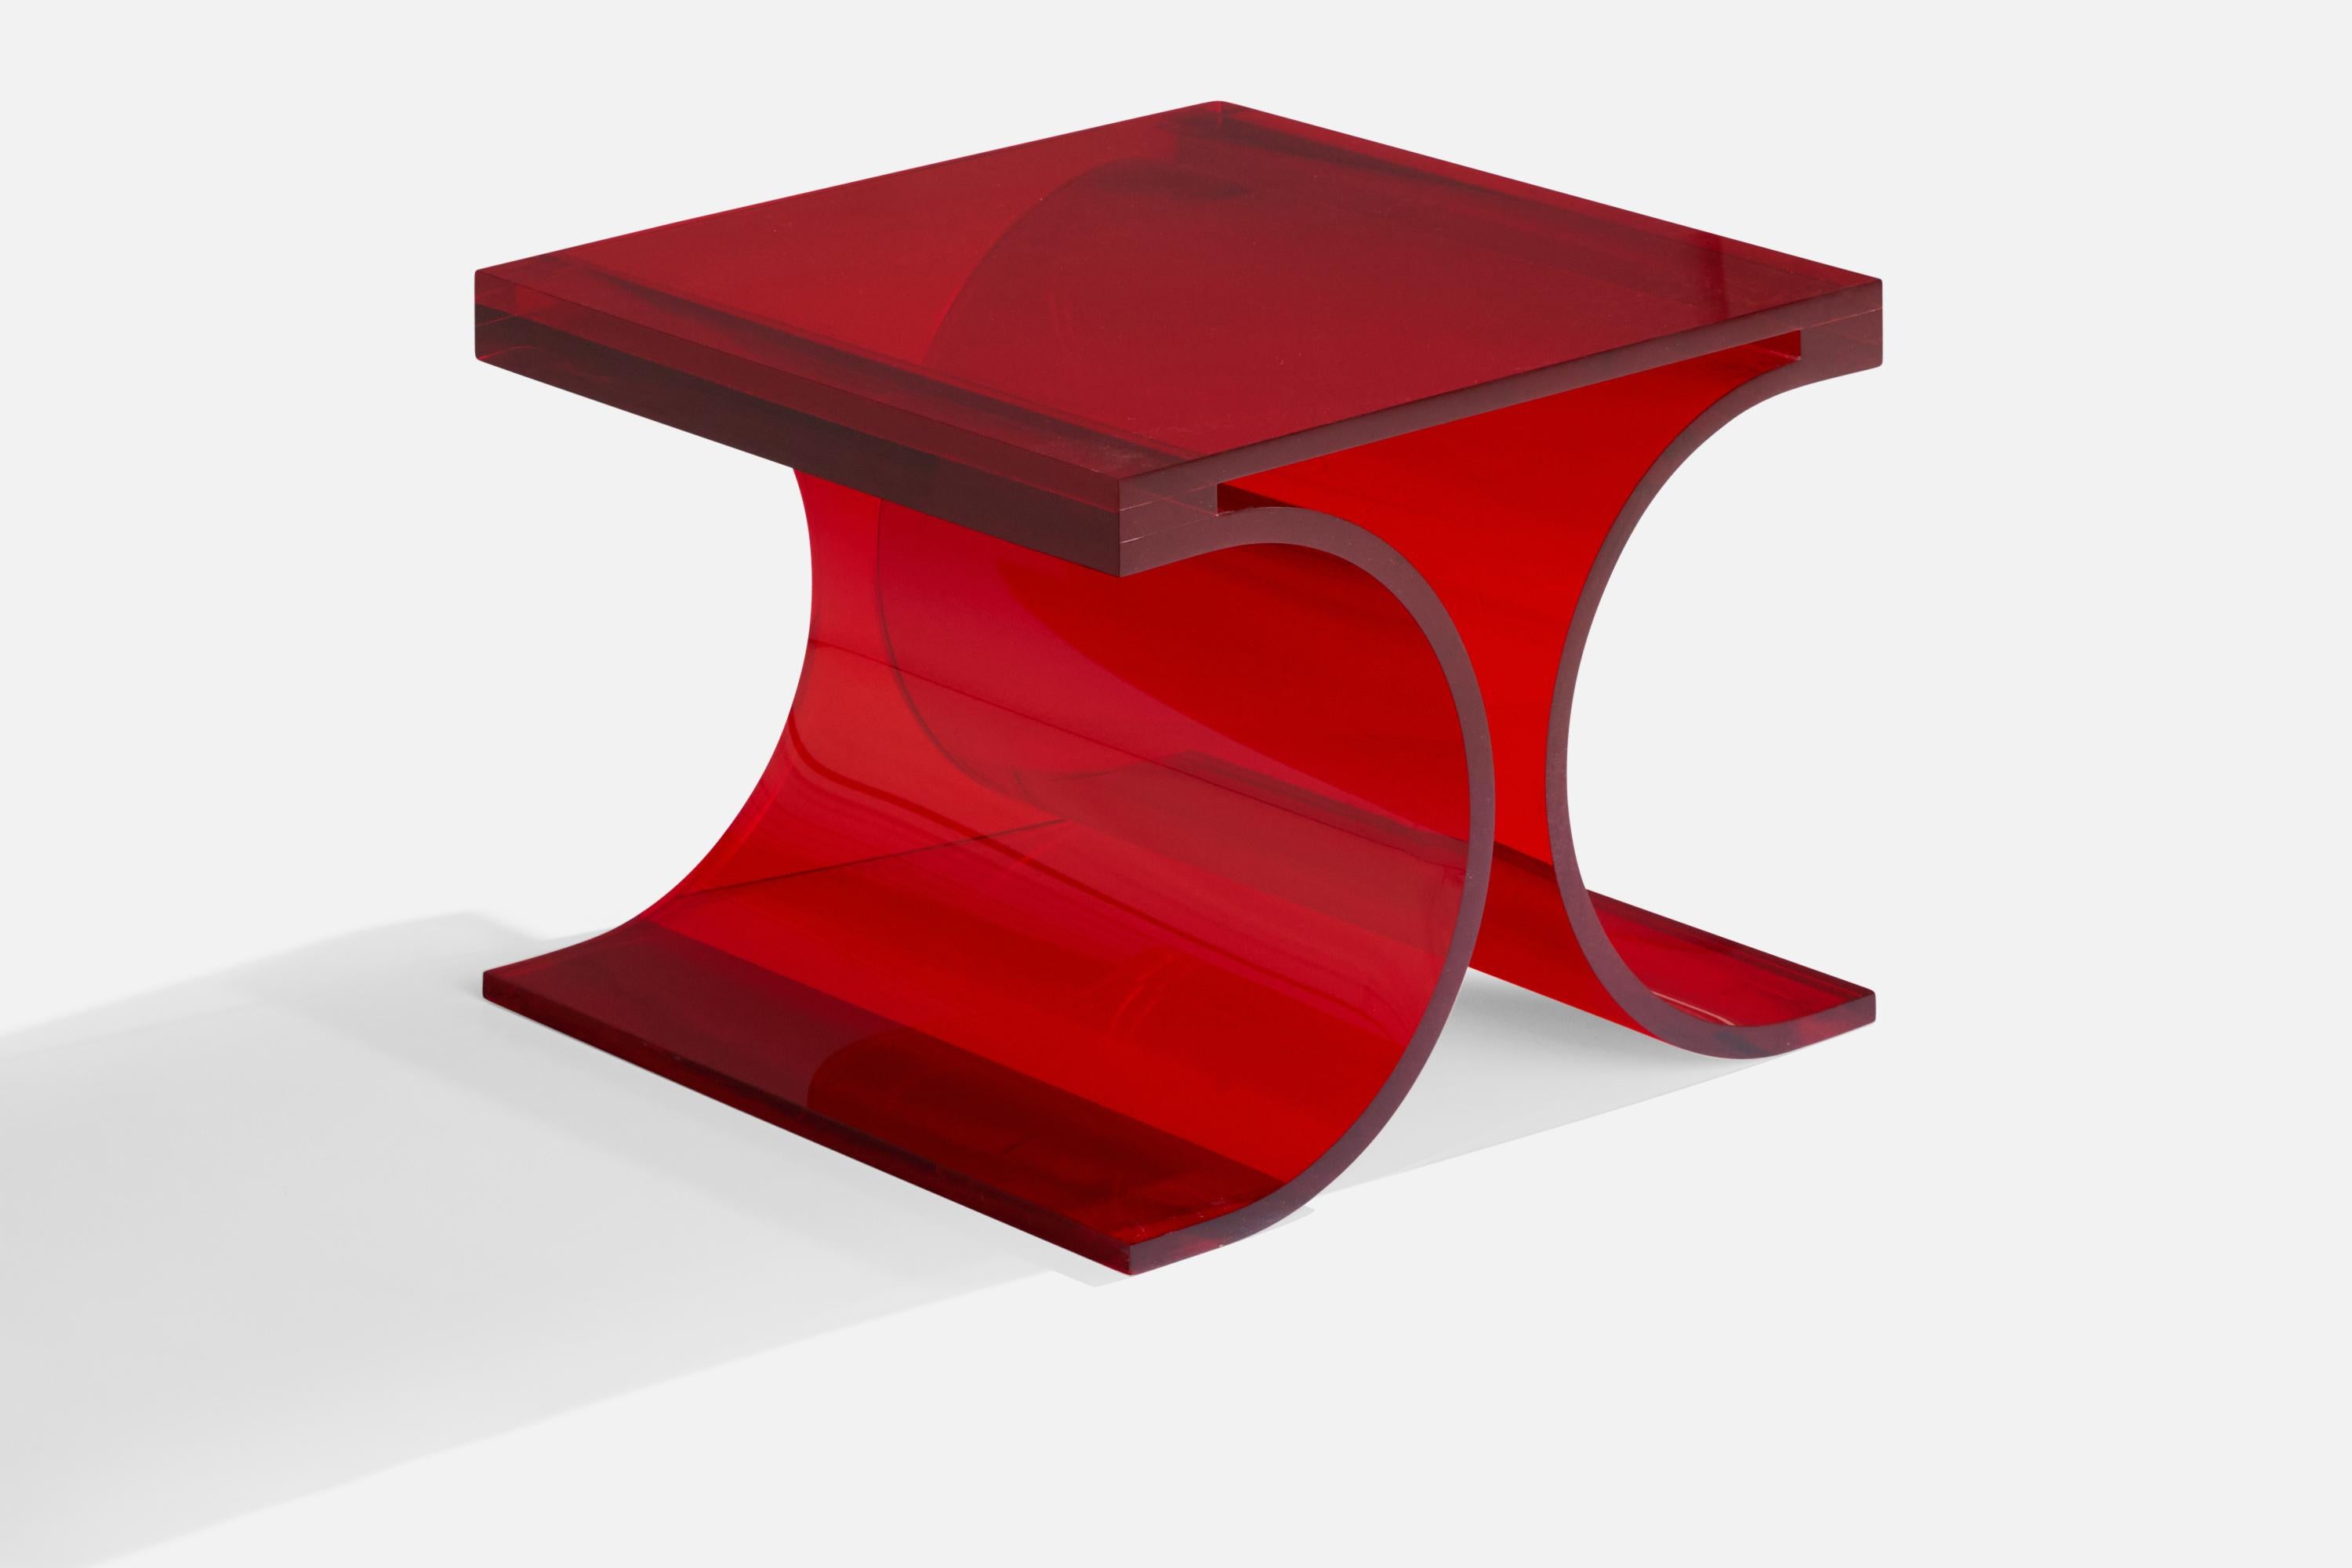 Prototype de table d'appoint en altuglas rouge conçu et produit par Michel Boyer & Jean-Pierrre Laporte, France, 2009.

Réalisé pour une exposition à Silvera en 2009.
